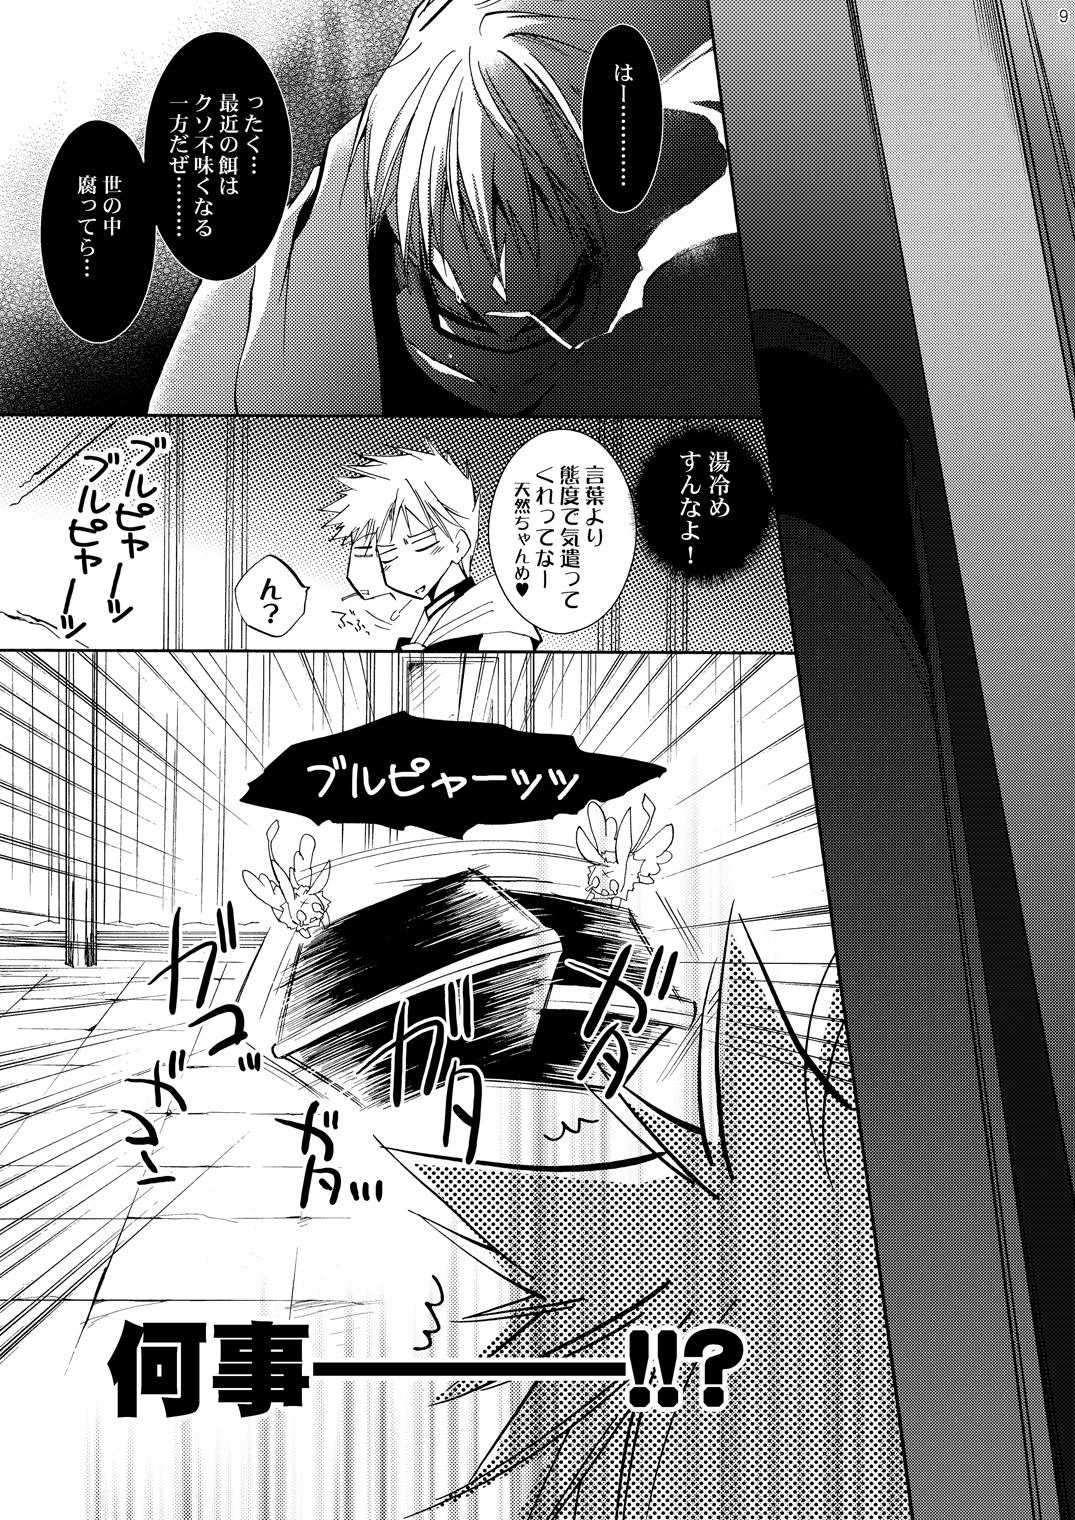 Boobs Hananemu no itsu waga mune ni kimi nemuru - 07-ghost Juggs - Page 8